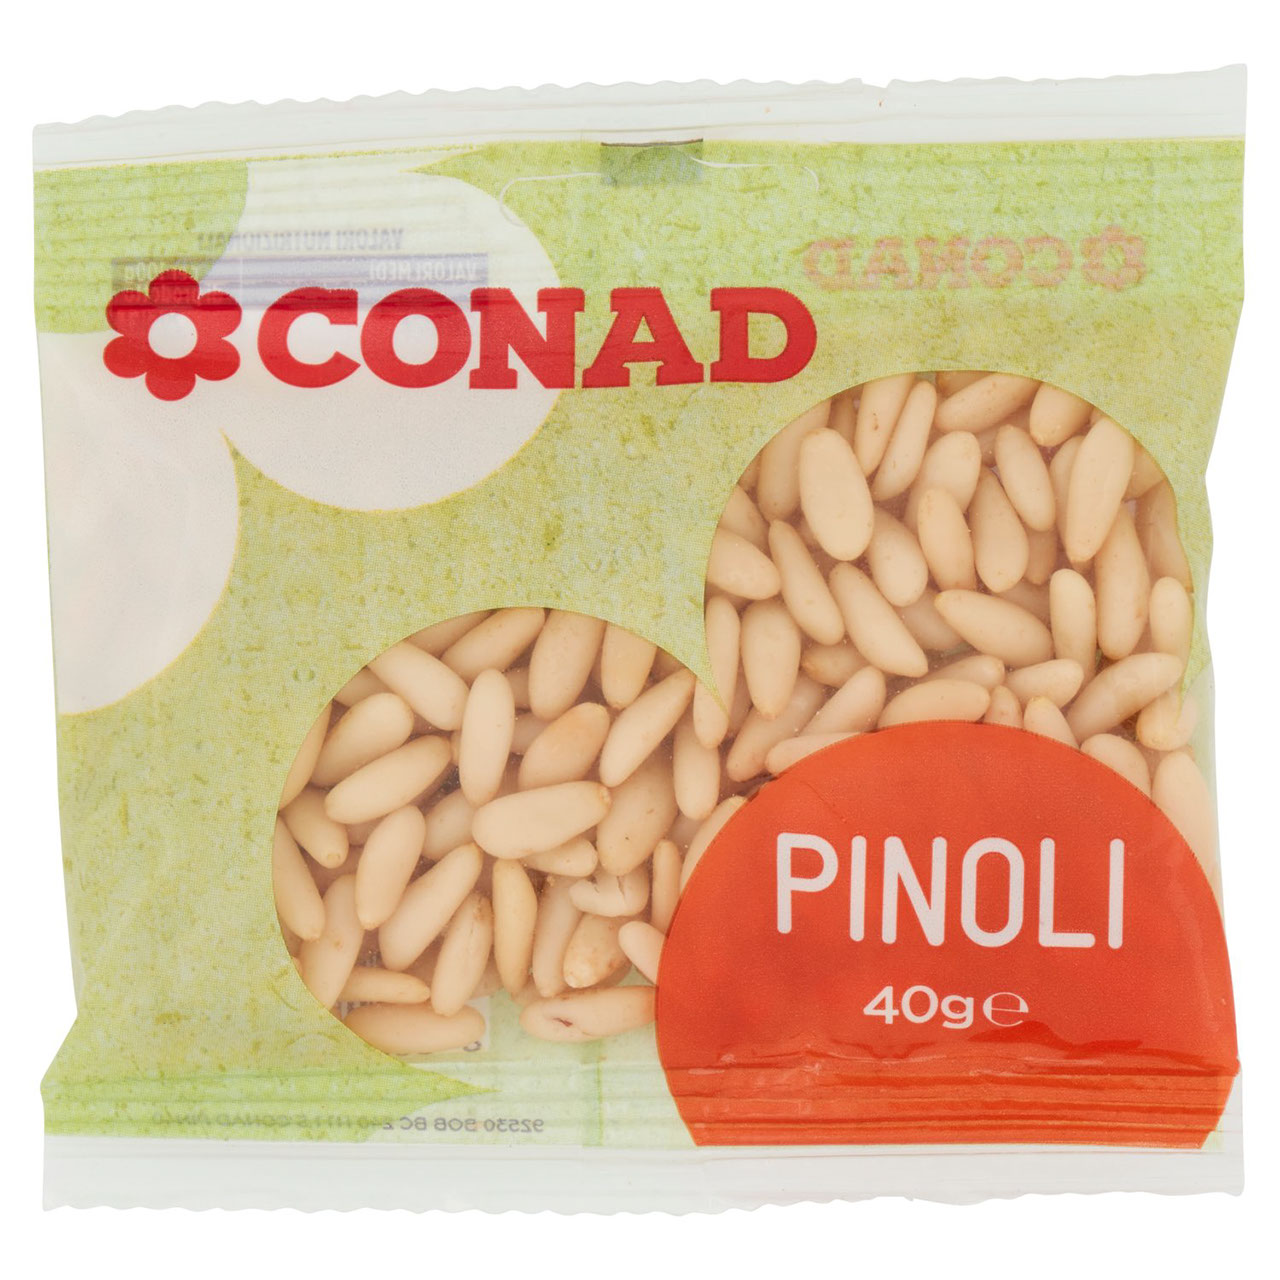 CONAD Pinoli 40 g in vendita online